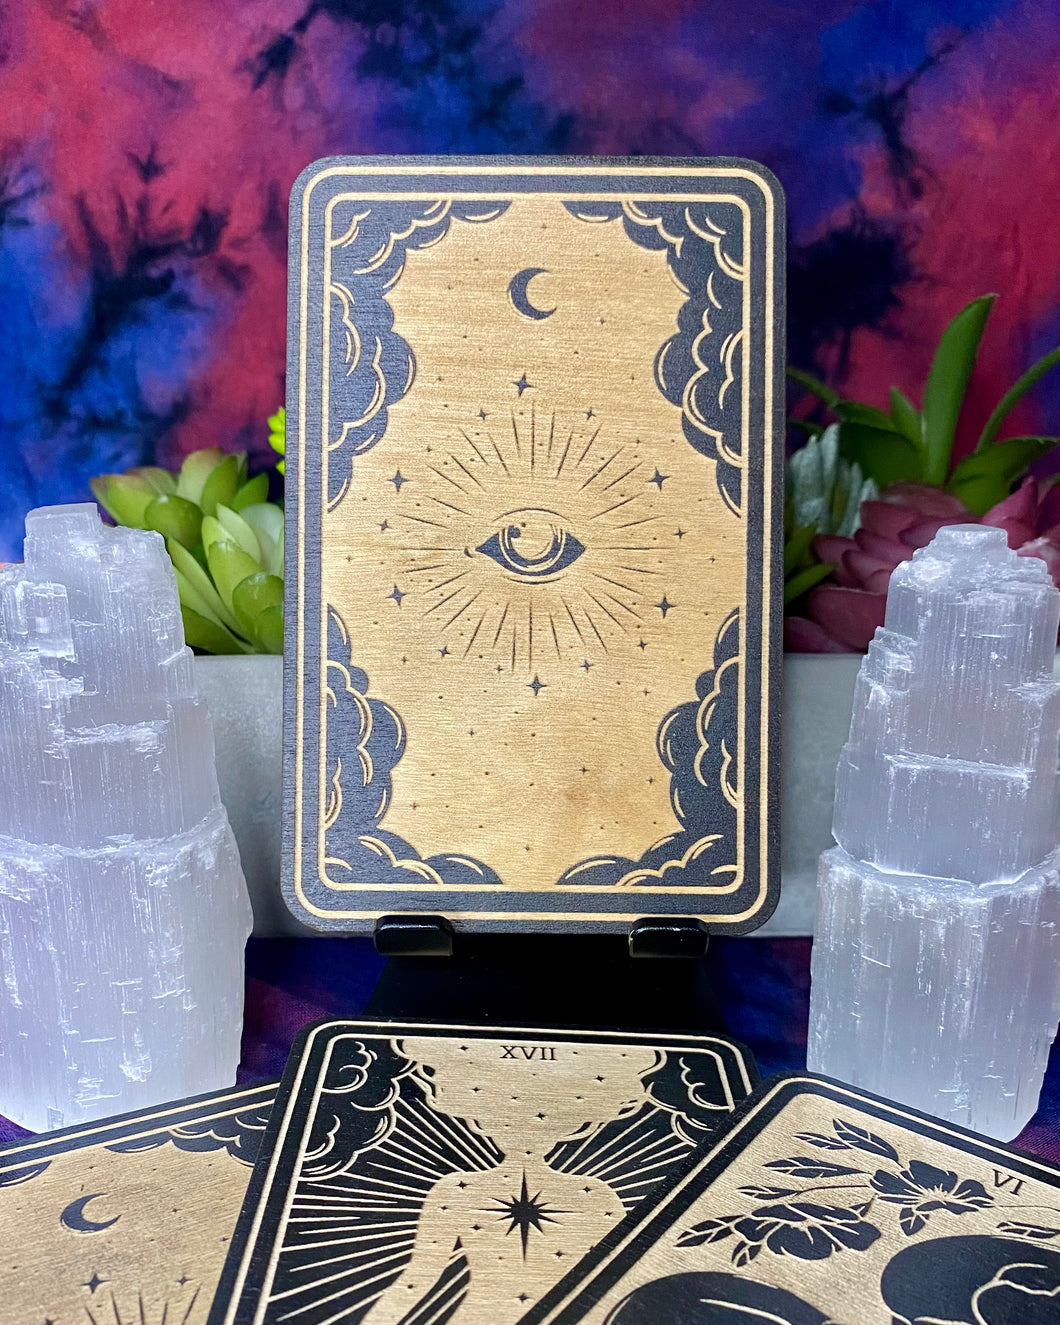 00 All Seeing Eye | Mystic Wooden Major Arcana Tarot | Witchy Birch Major Arcana Décor Card | Painted Black